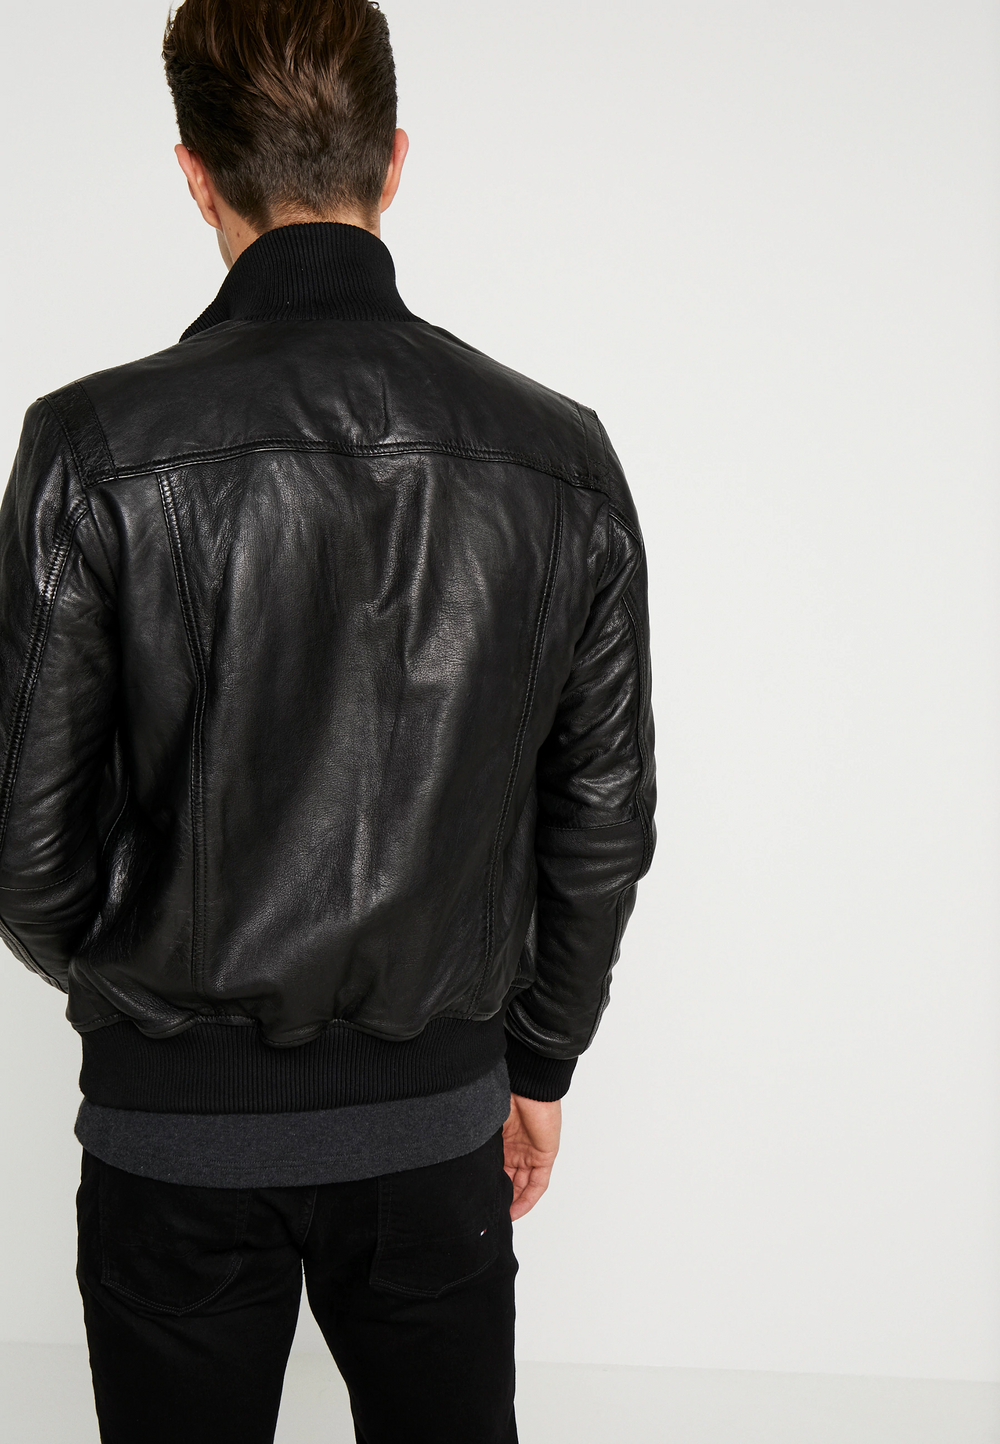 Black Leather Jacket Online